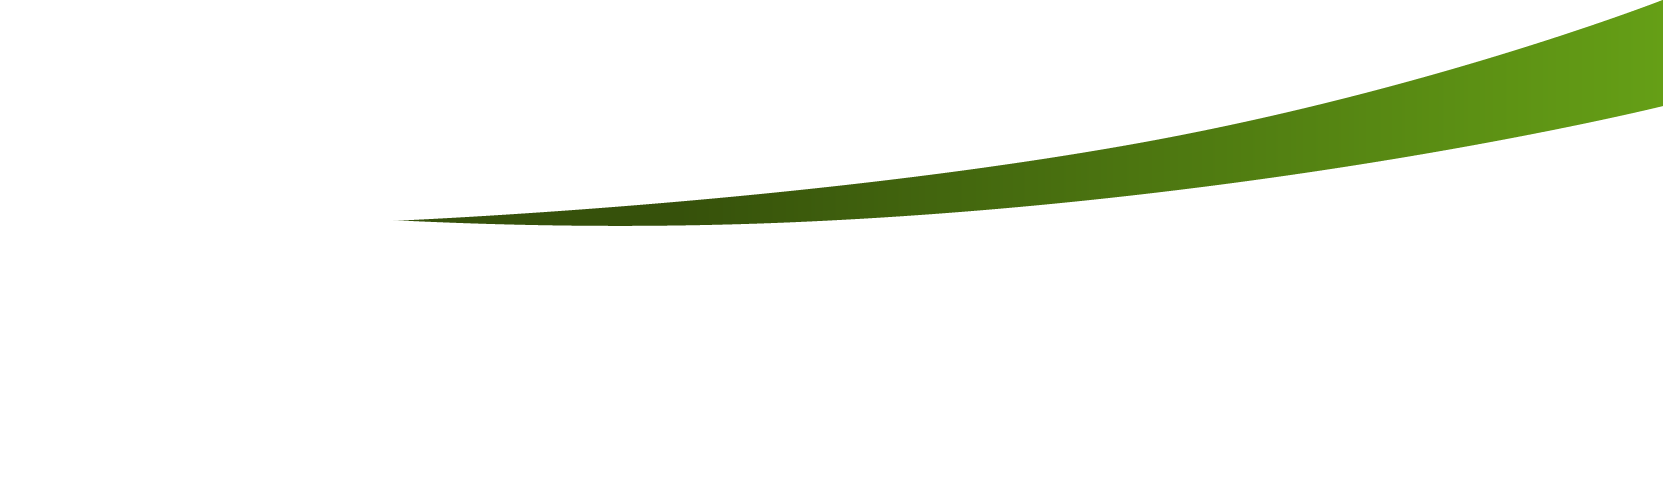 Línea verde curva que separa el slider del contenido